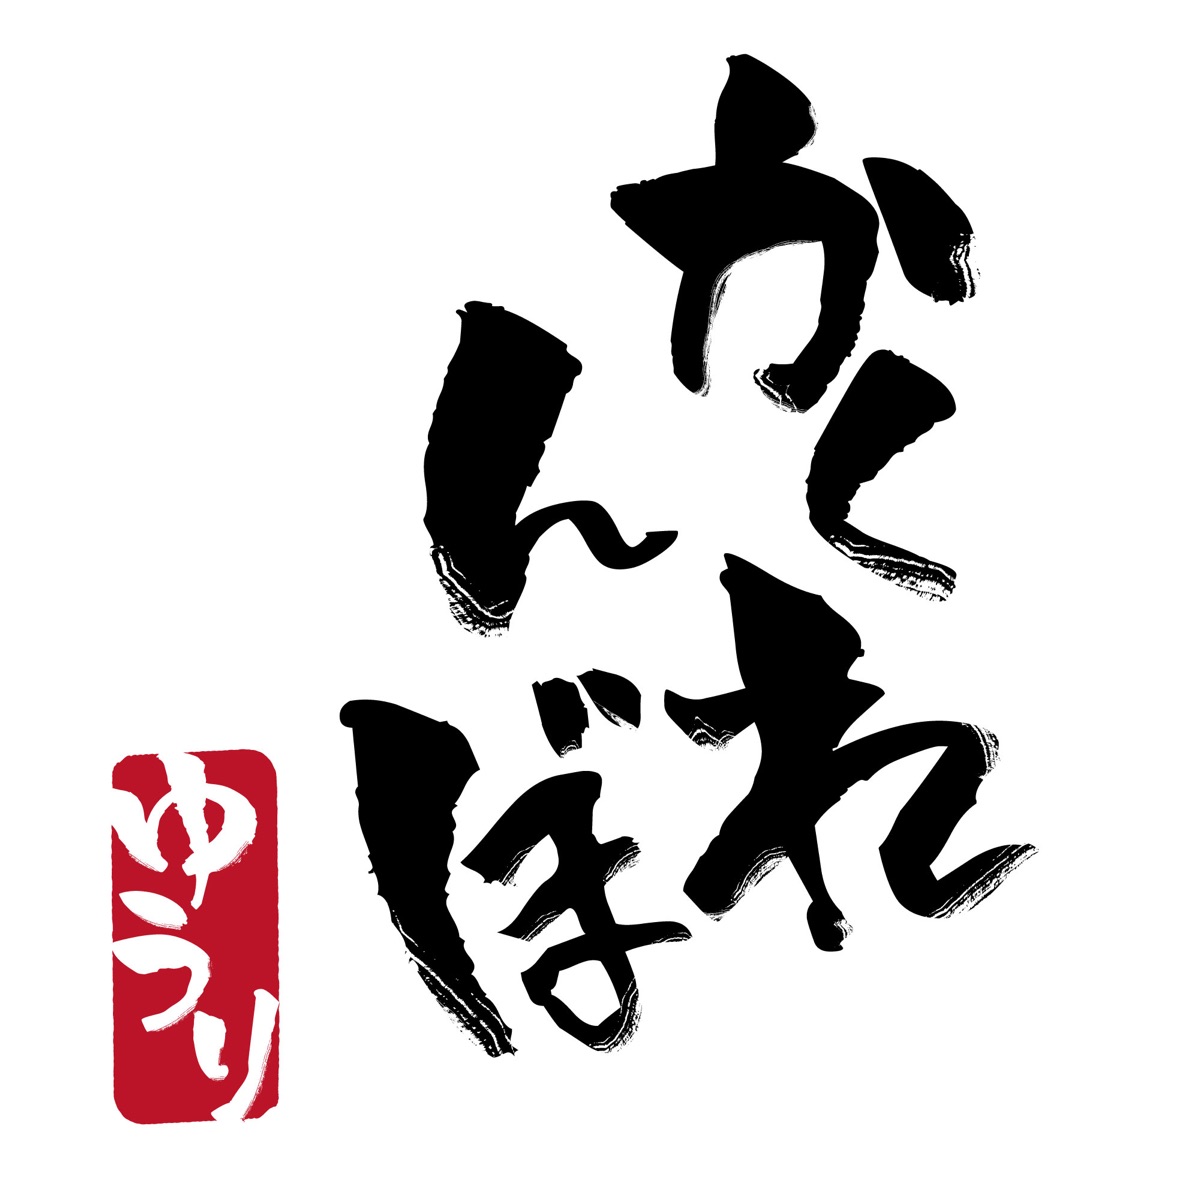 Cover for『Yuuri - Kakurenbo』from the release『Kakurenbo』